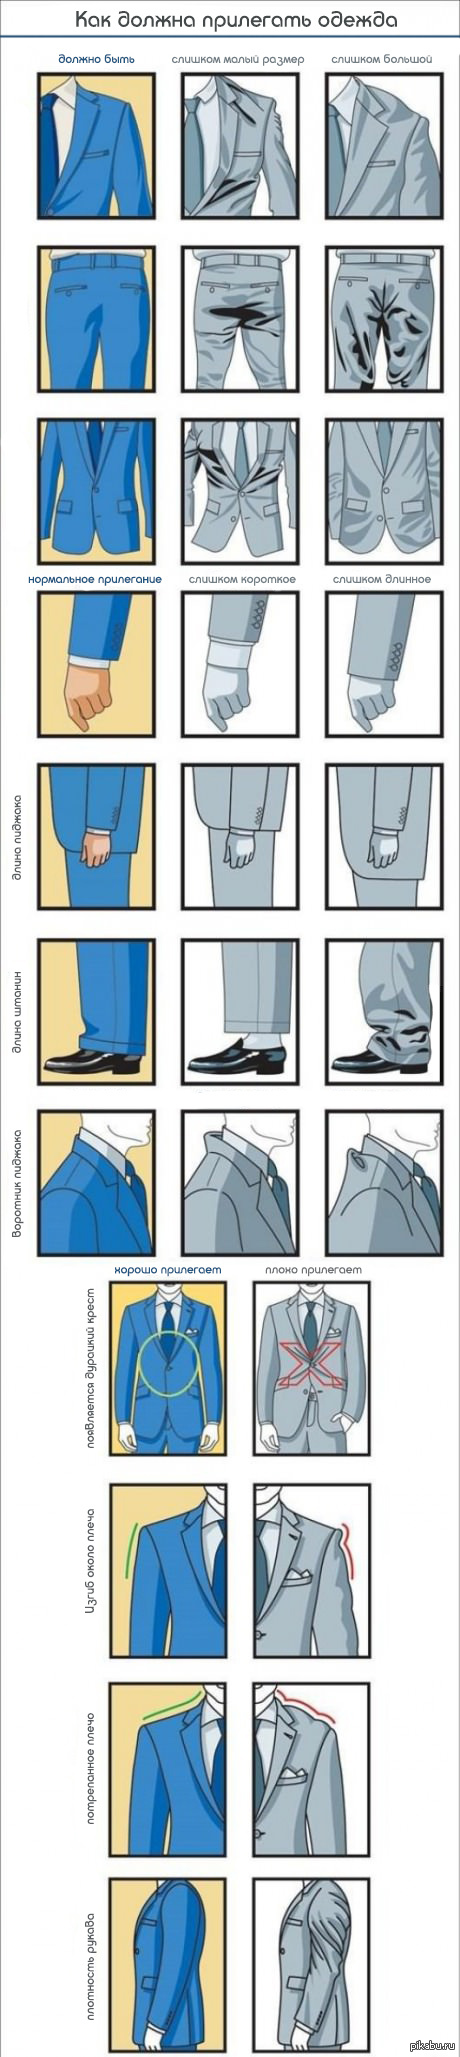 Правильно подобранный костюм. Правильная посадка костюма. Подобрать пиджак по размеру мужчине. Посадка пиджака мужского. Как правильно подобрать пиджак по размеру.